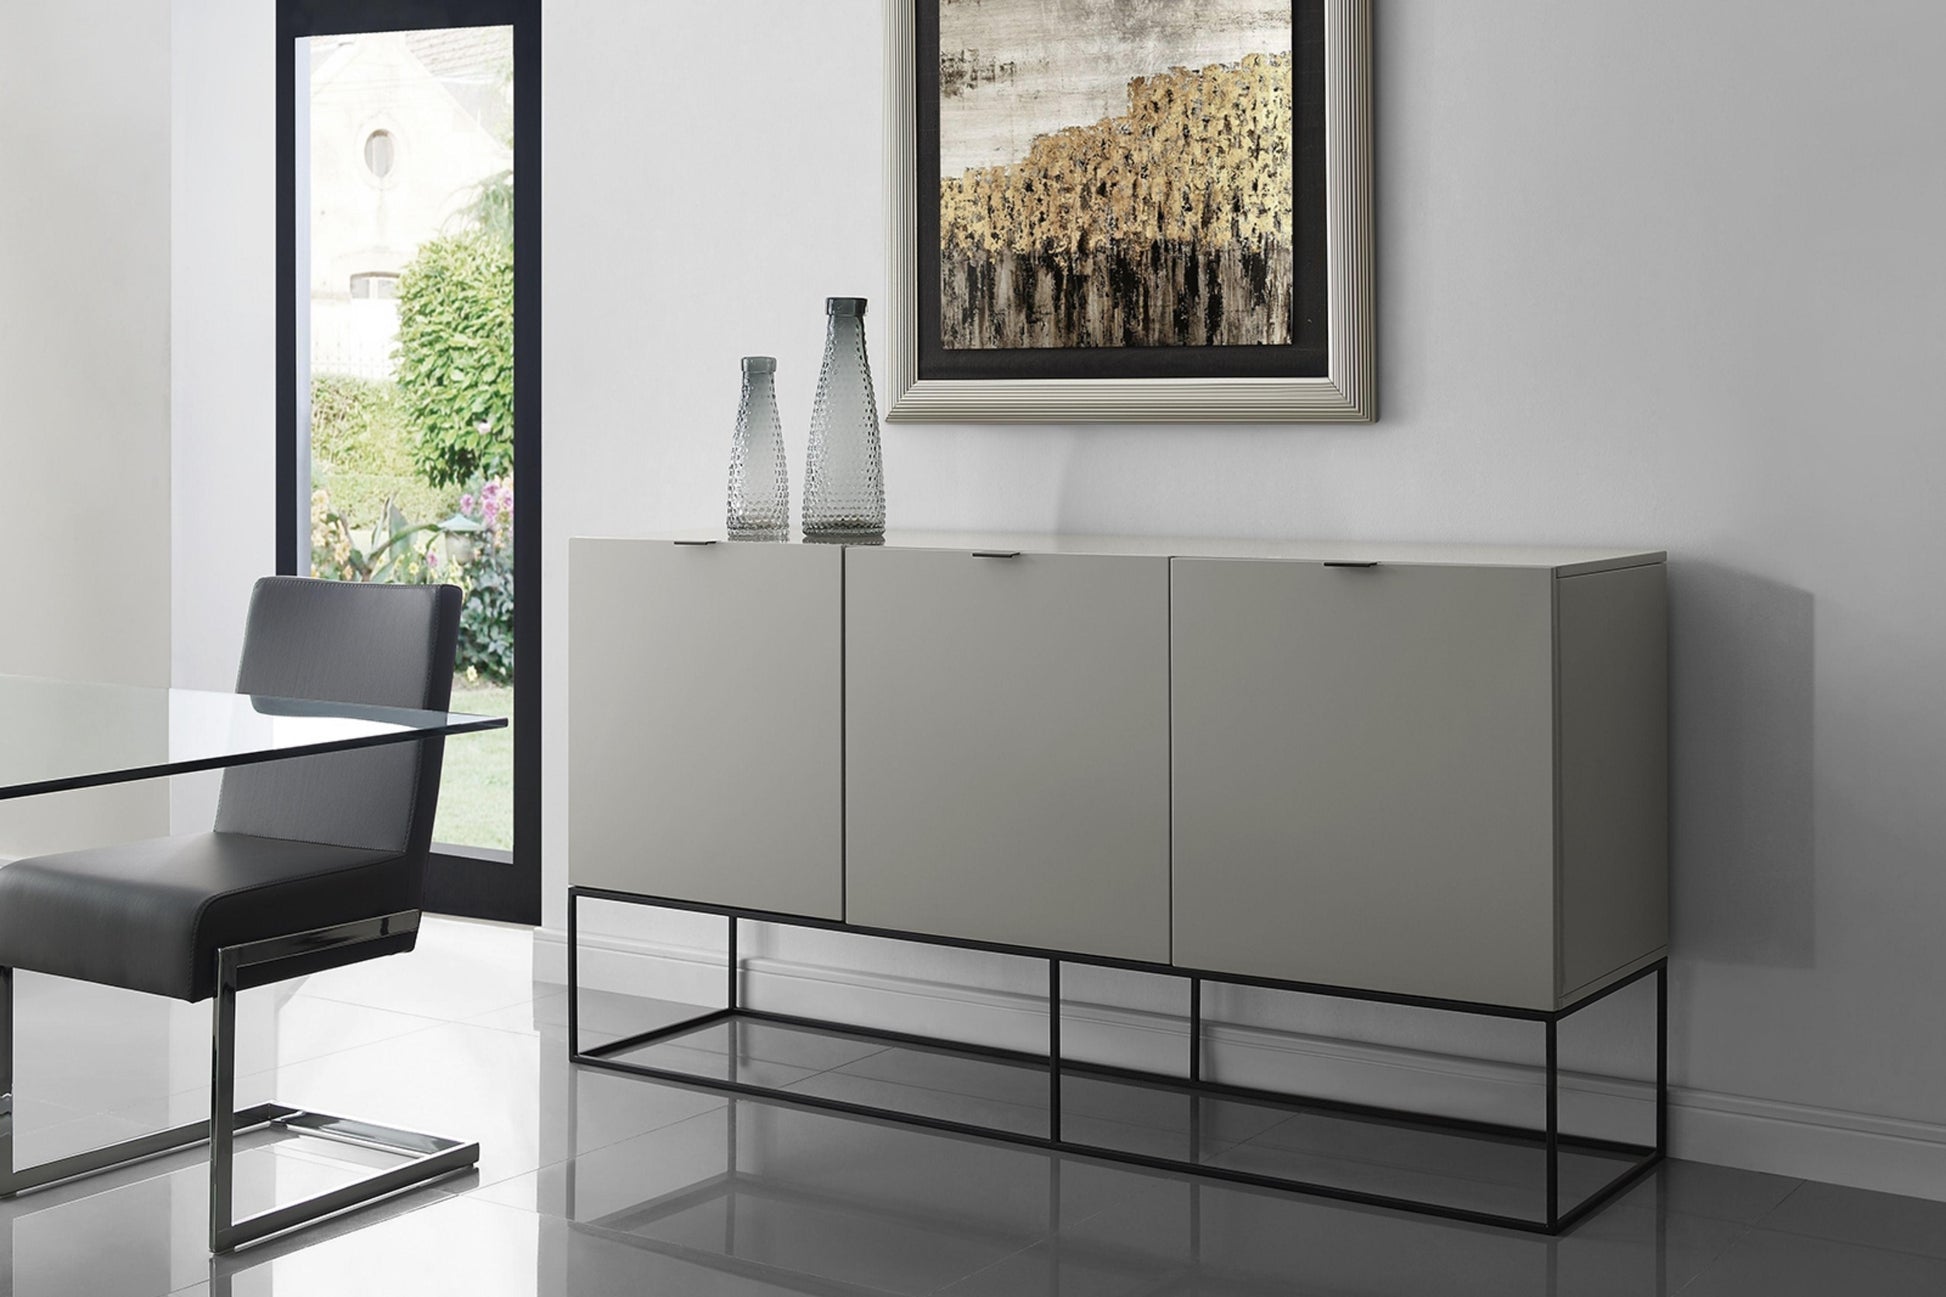 Vizzione Buffet-Server Model CB-1411-BG - Venini Furniture 